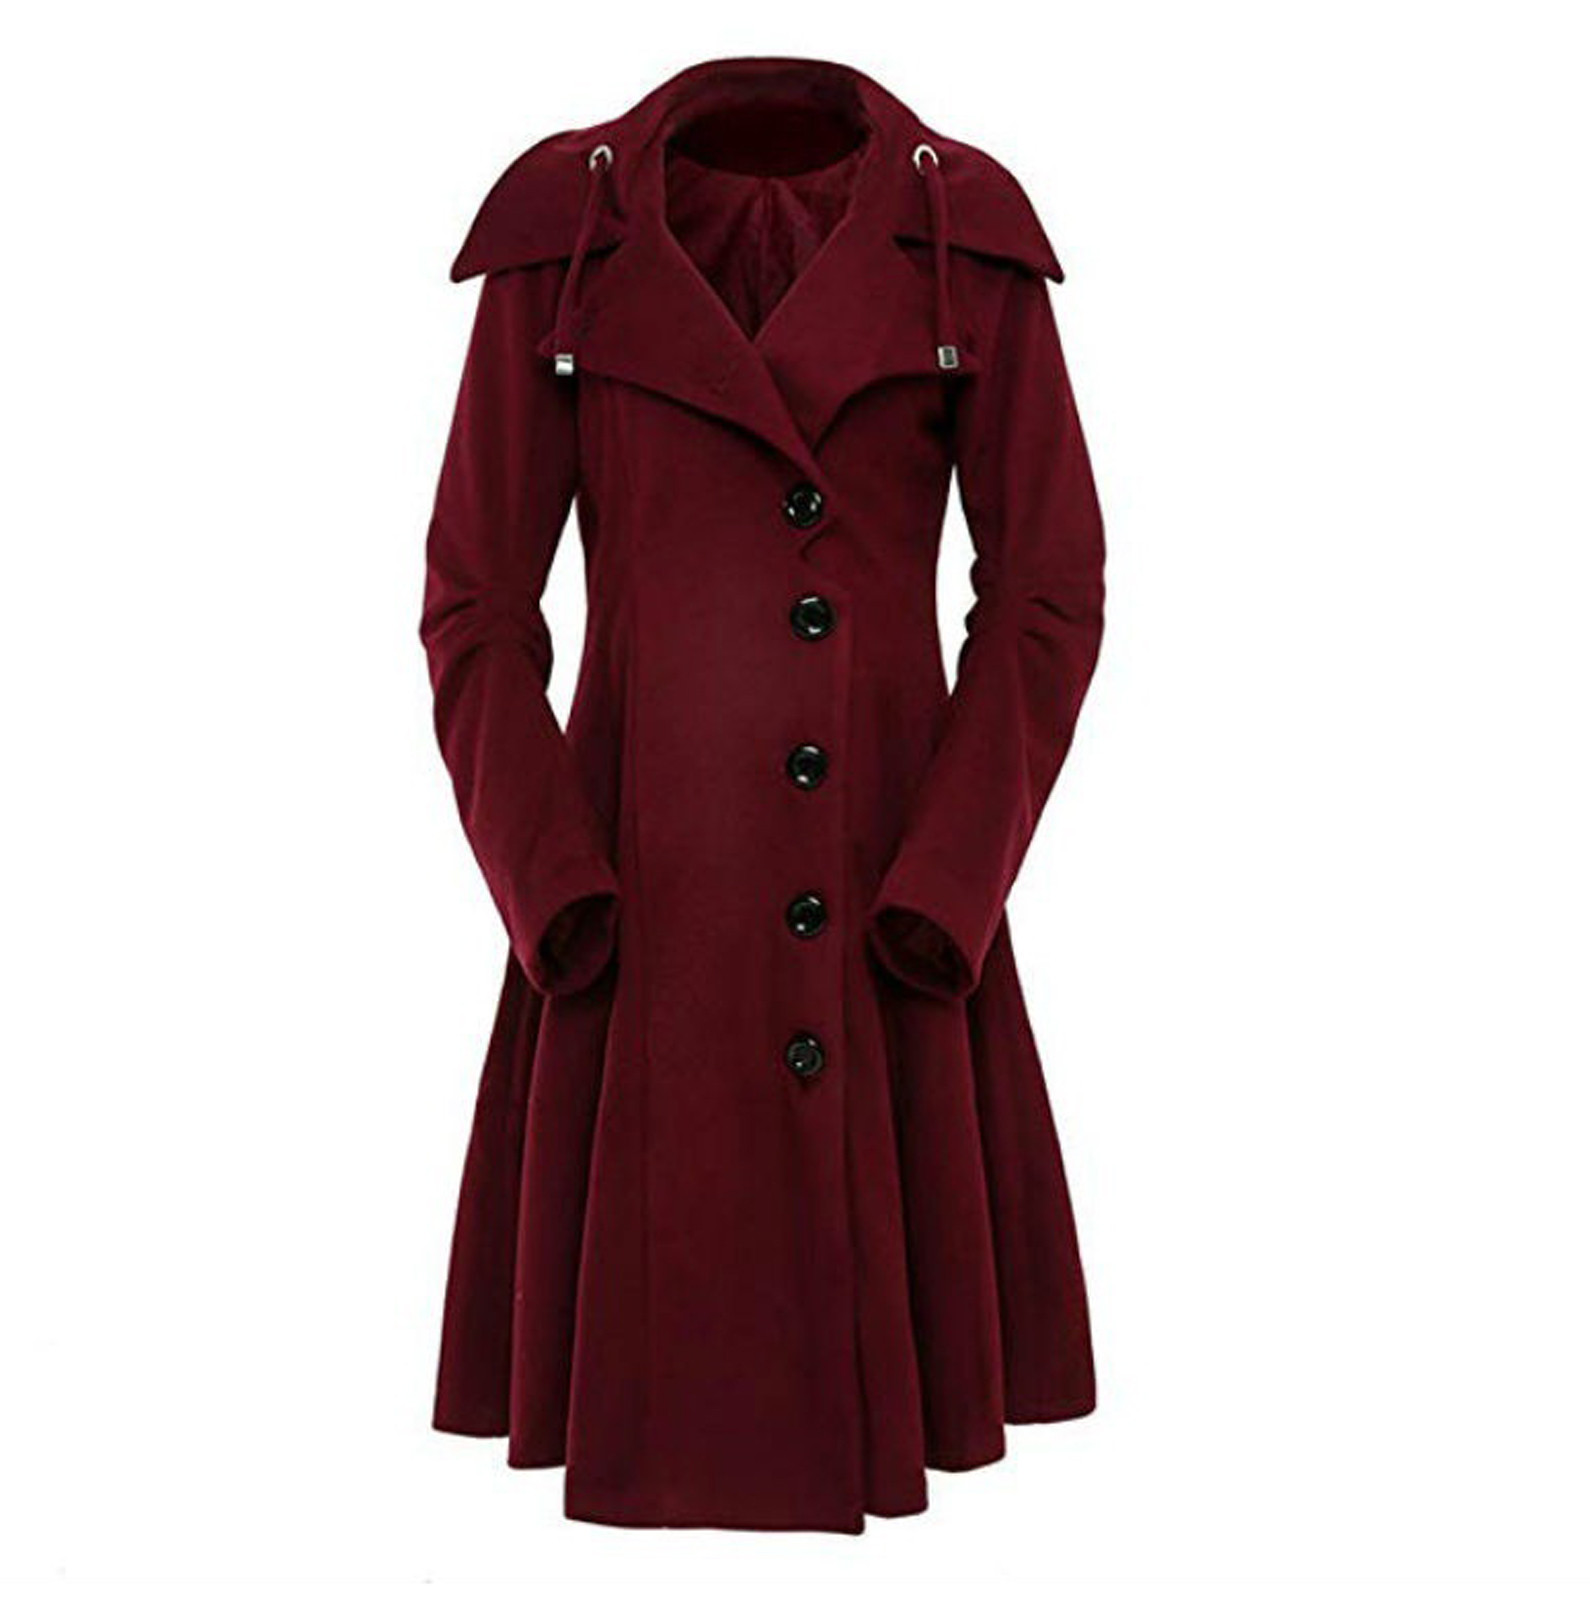 Bescita Women Faux Wool Warm Slim Coat Jacket Thick-Parka Overcoat Long Winter Outwear - image 1 of 5